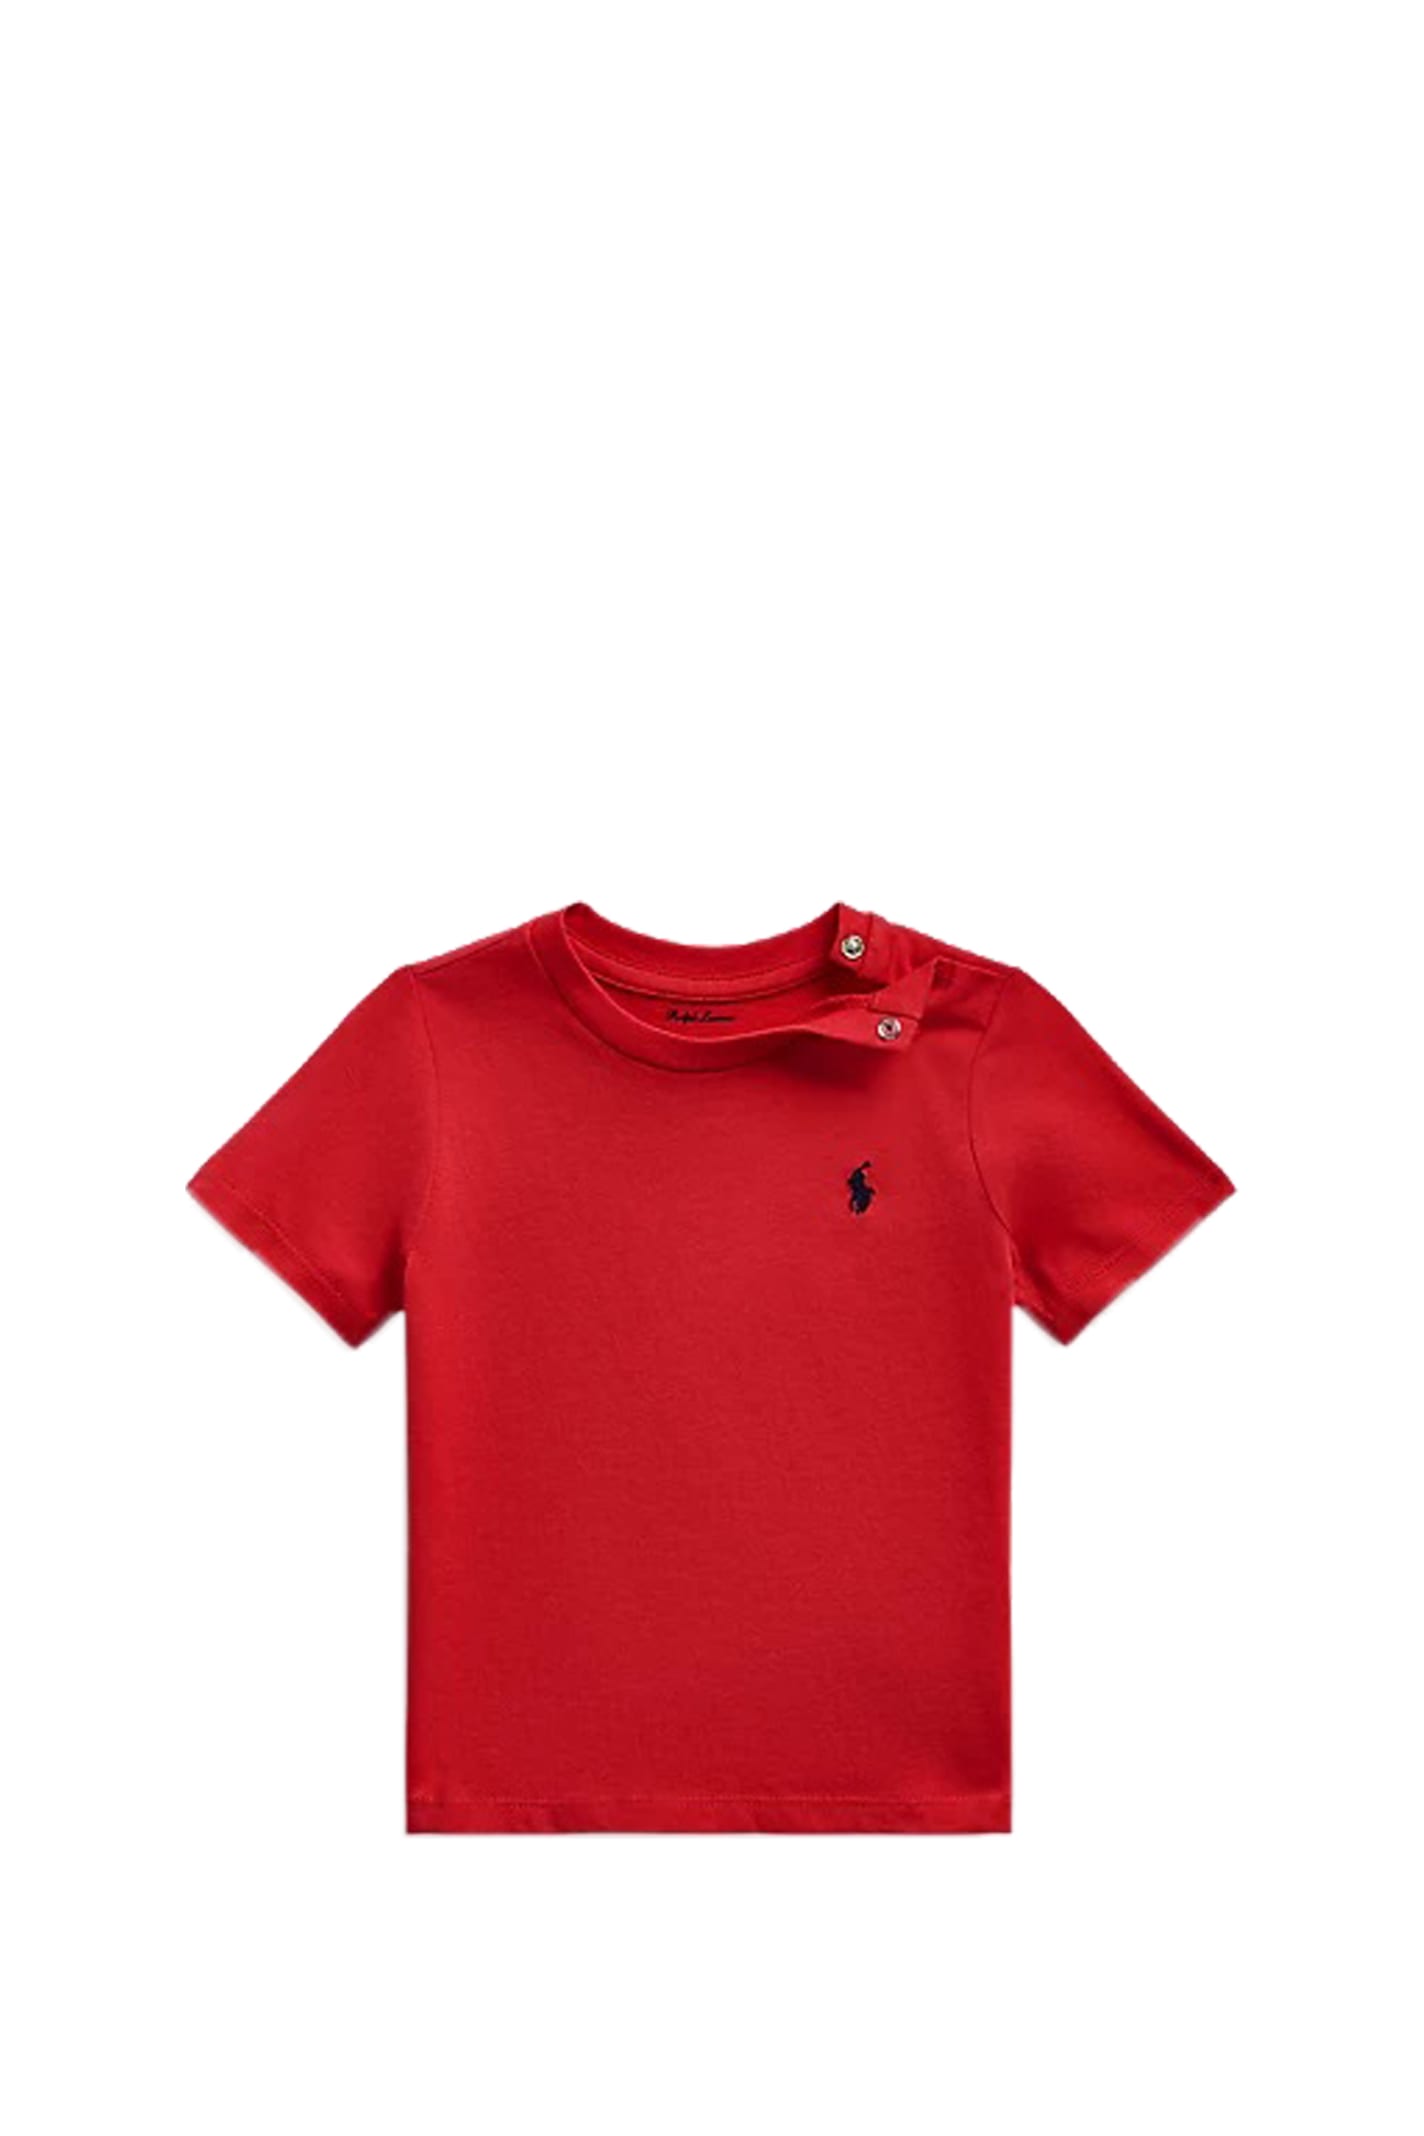 Ralph Lauren Babies' Crew Neck T-shirt In Cotton Jersey In Red